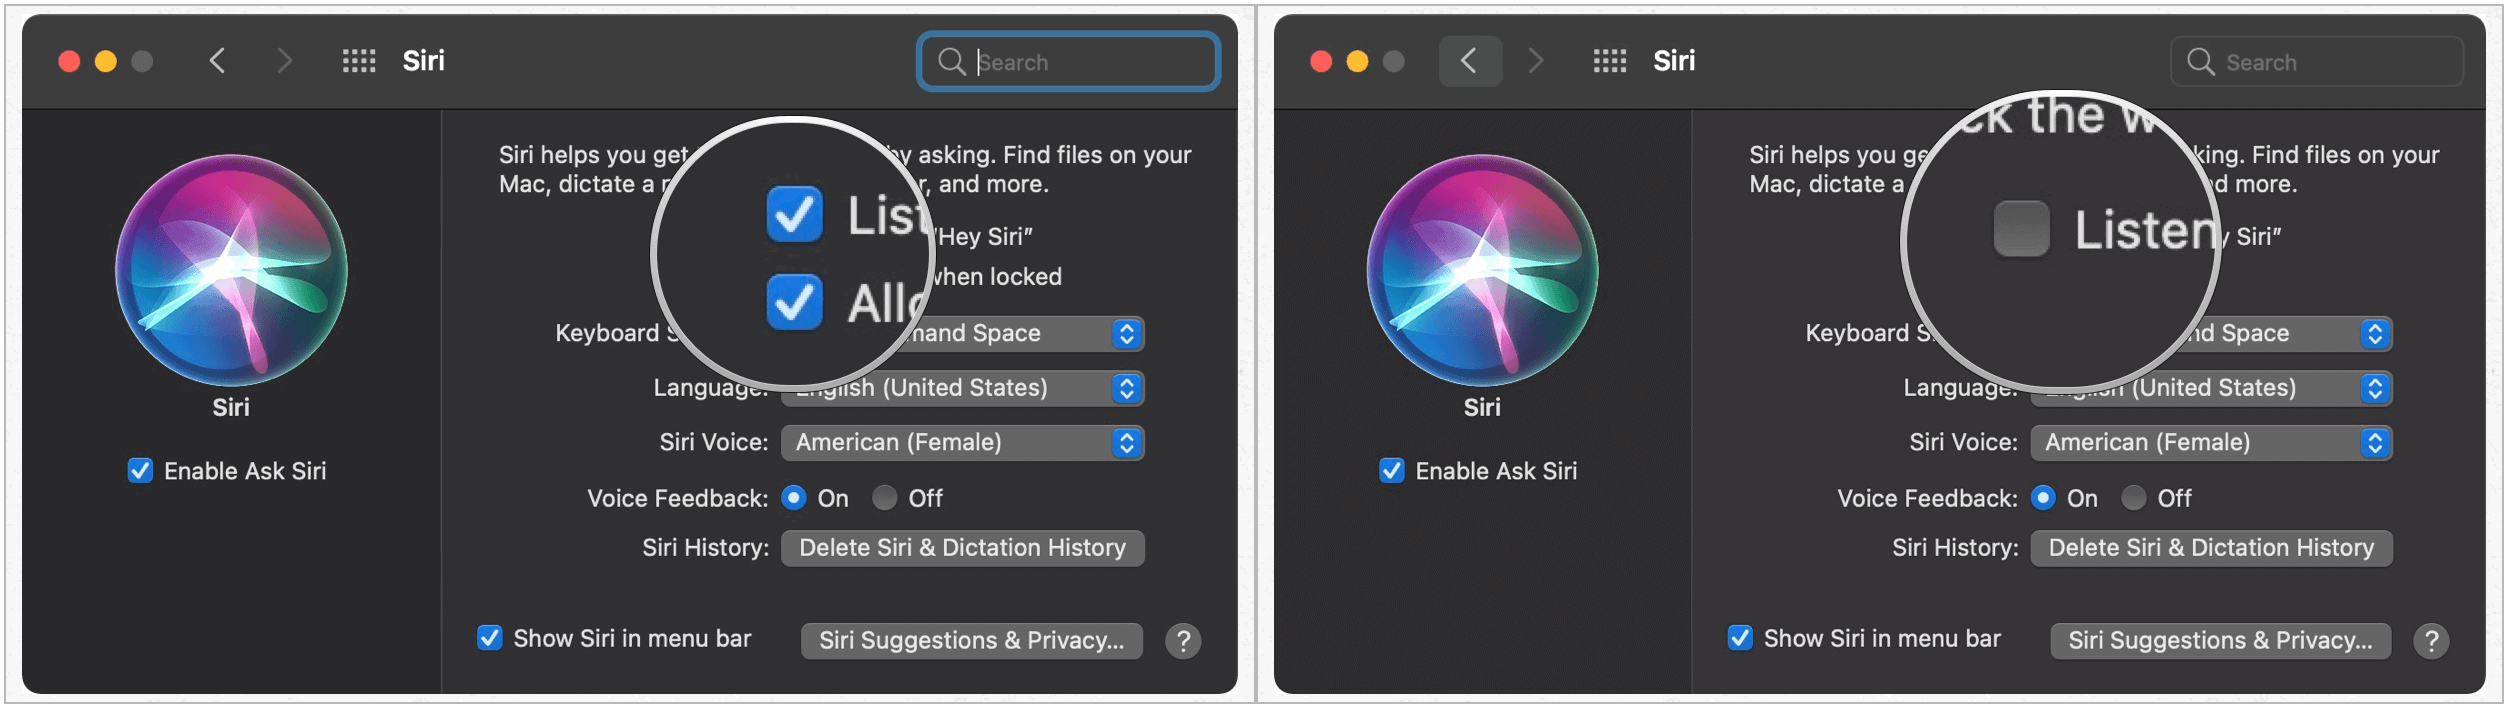 Siri Mac settings